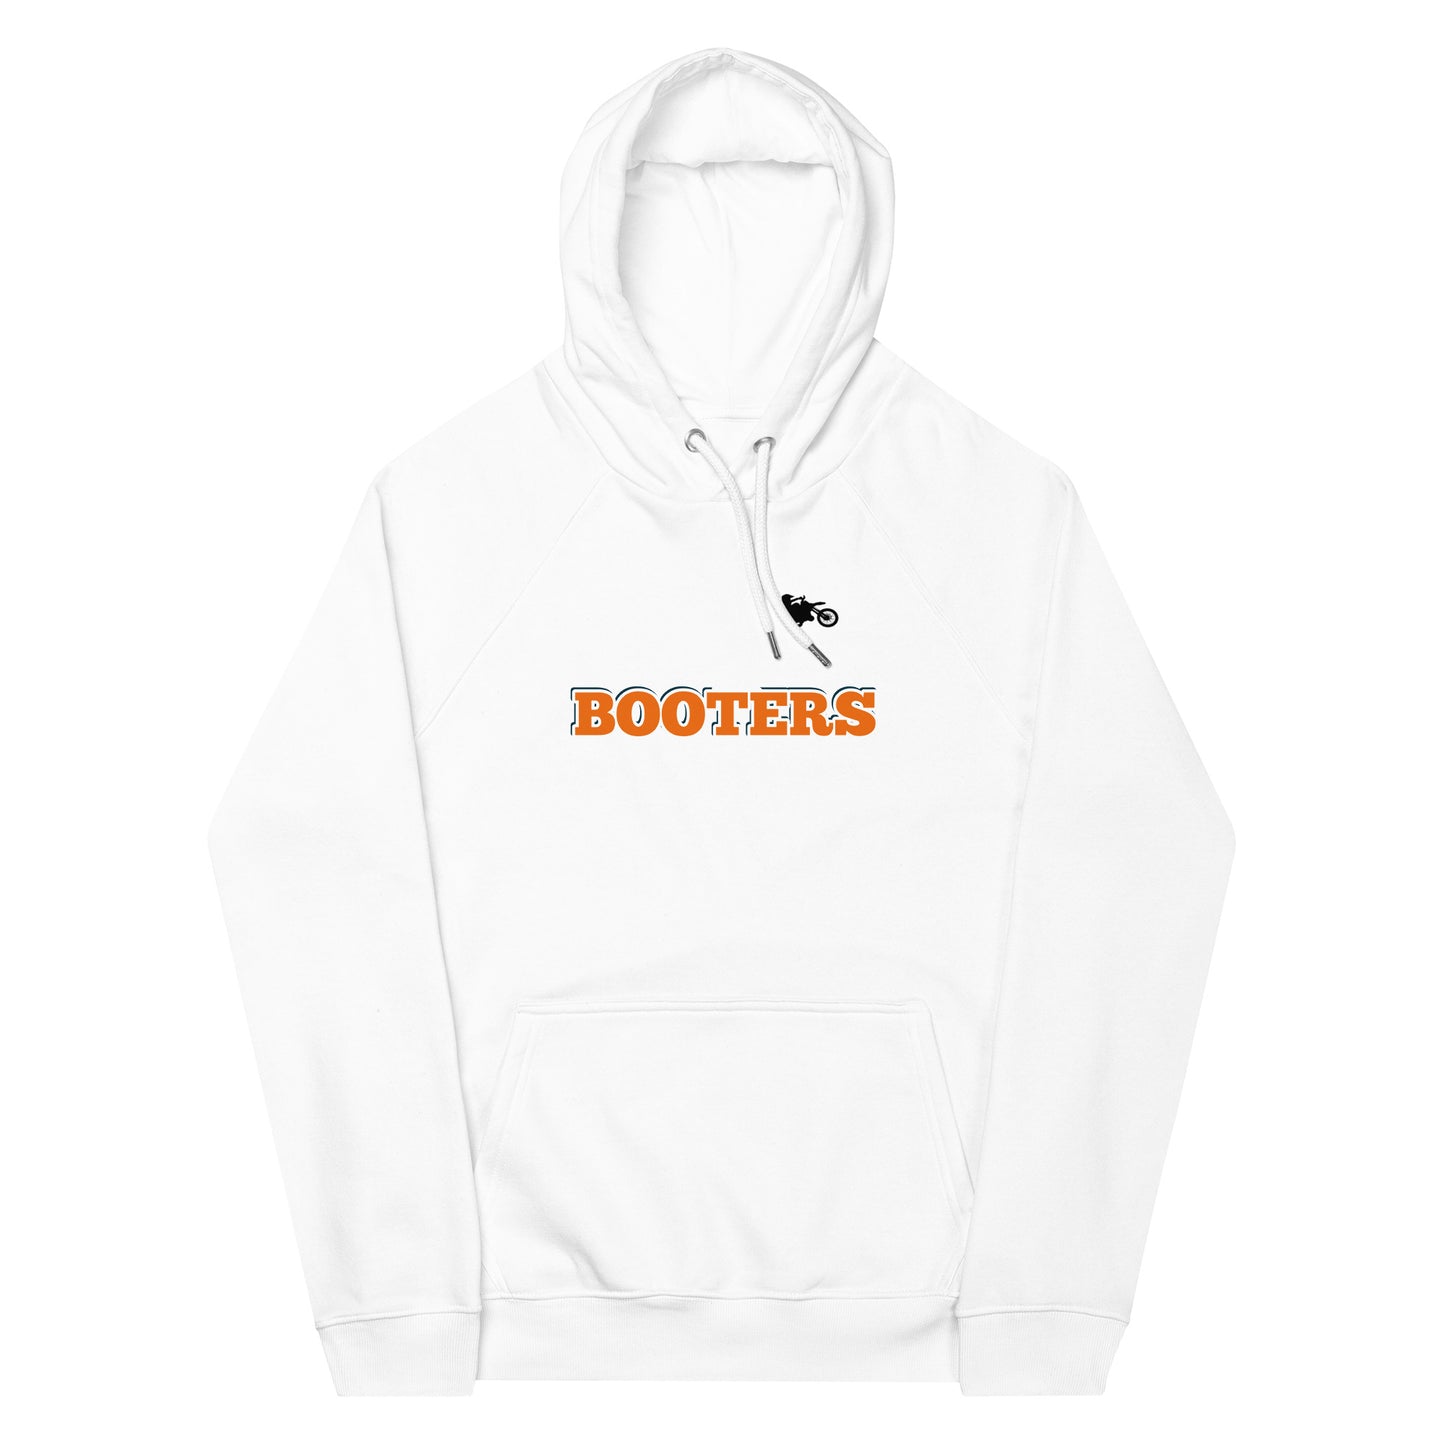 BOOTERS hoodie